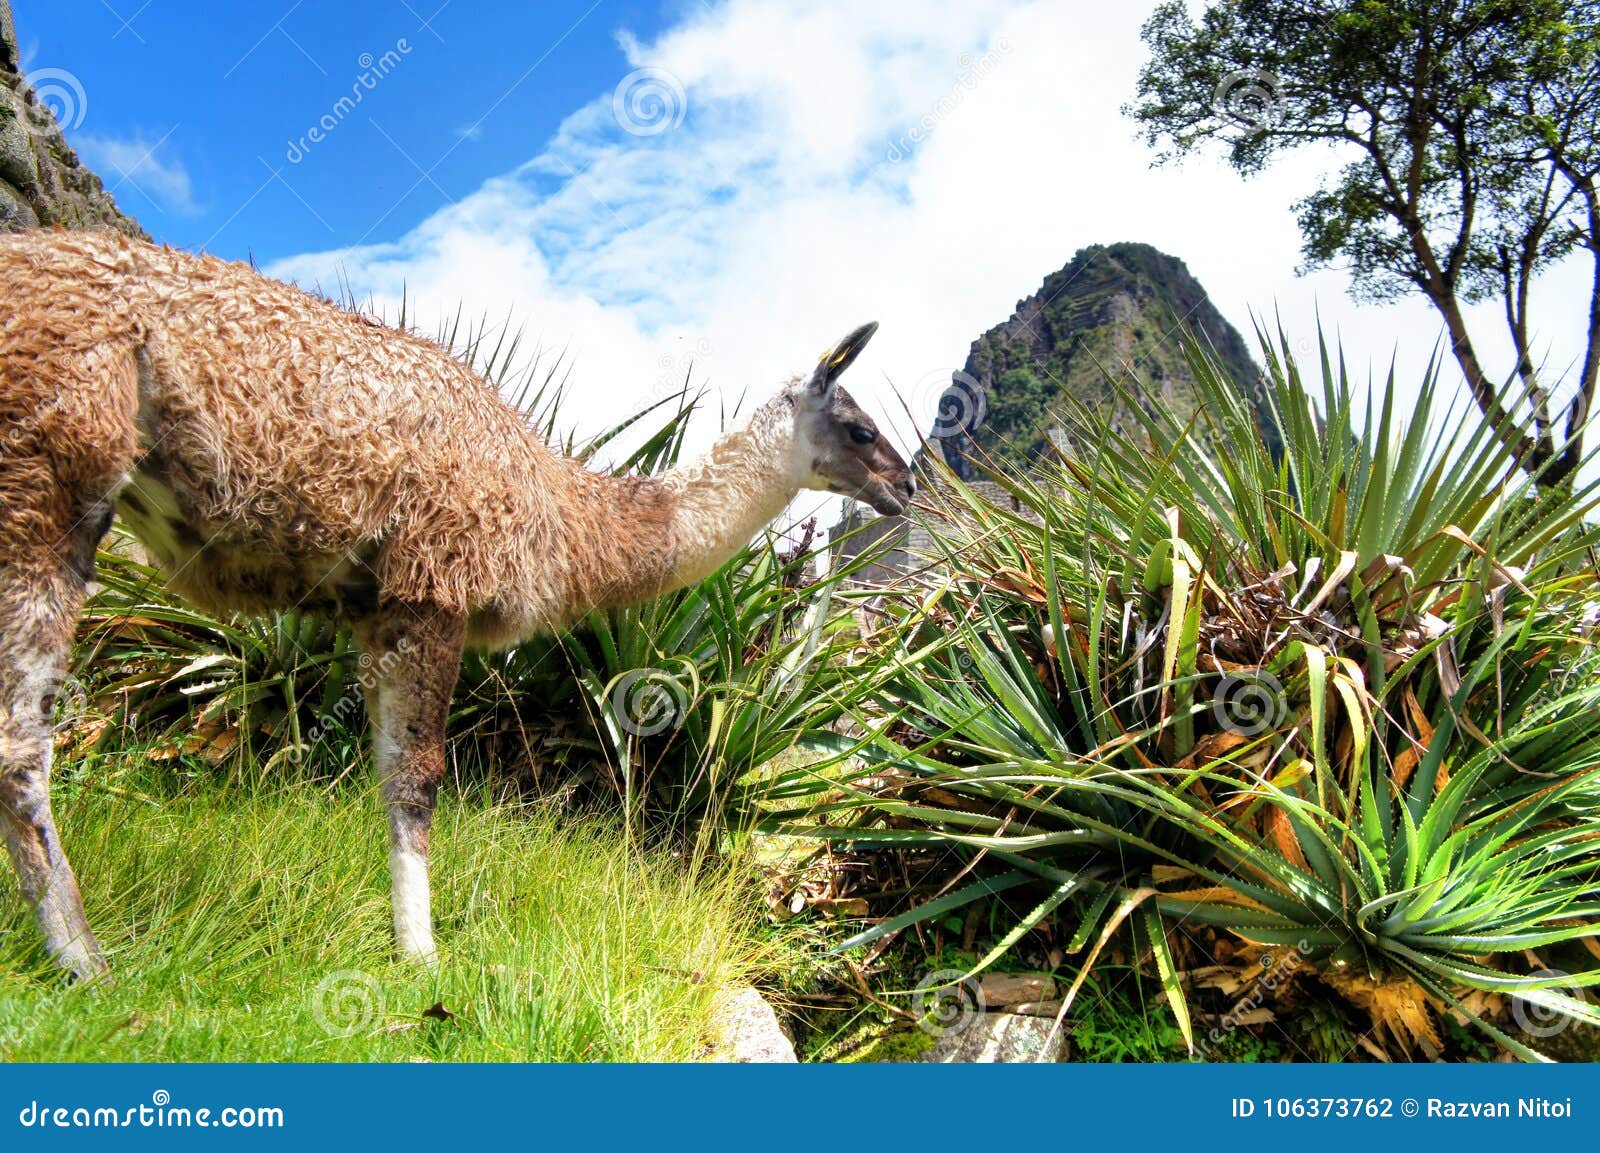 Lama em Machu Picchu com mandioca e montanha. Lama de Machu Picchu que come a grama, com plantas da mandioca, uma árvore e a montanha no fundo